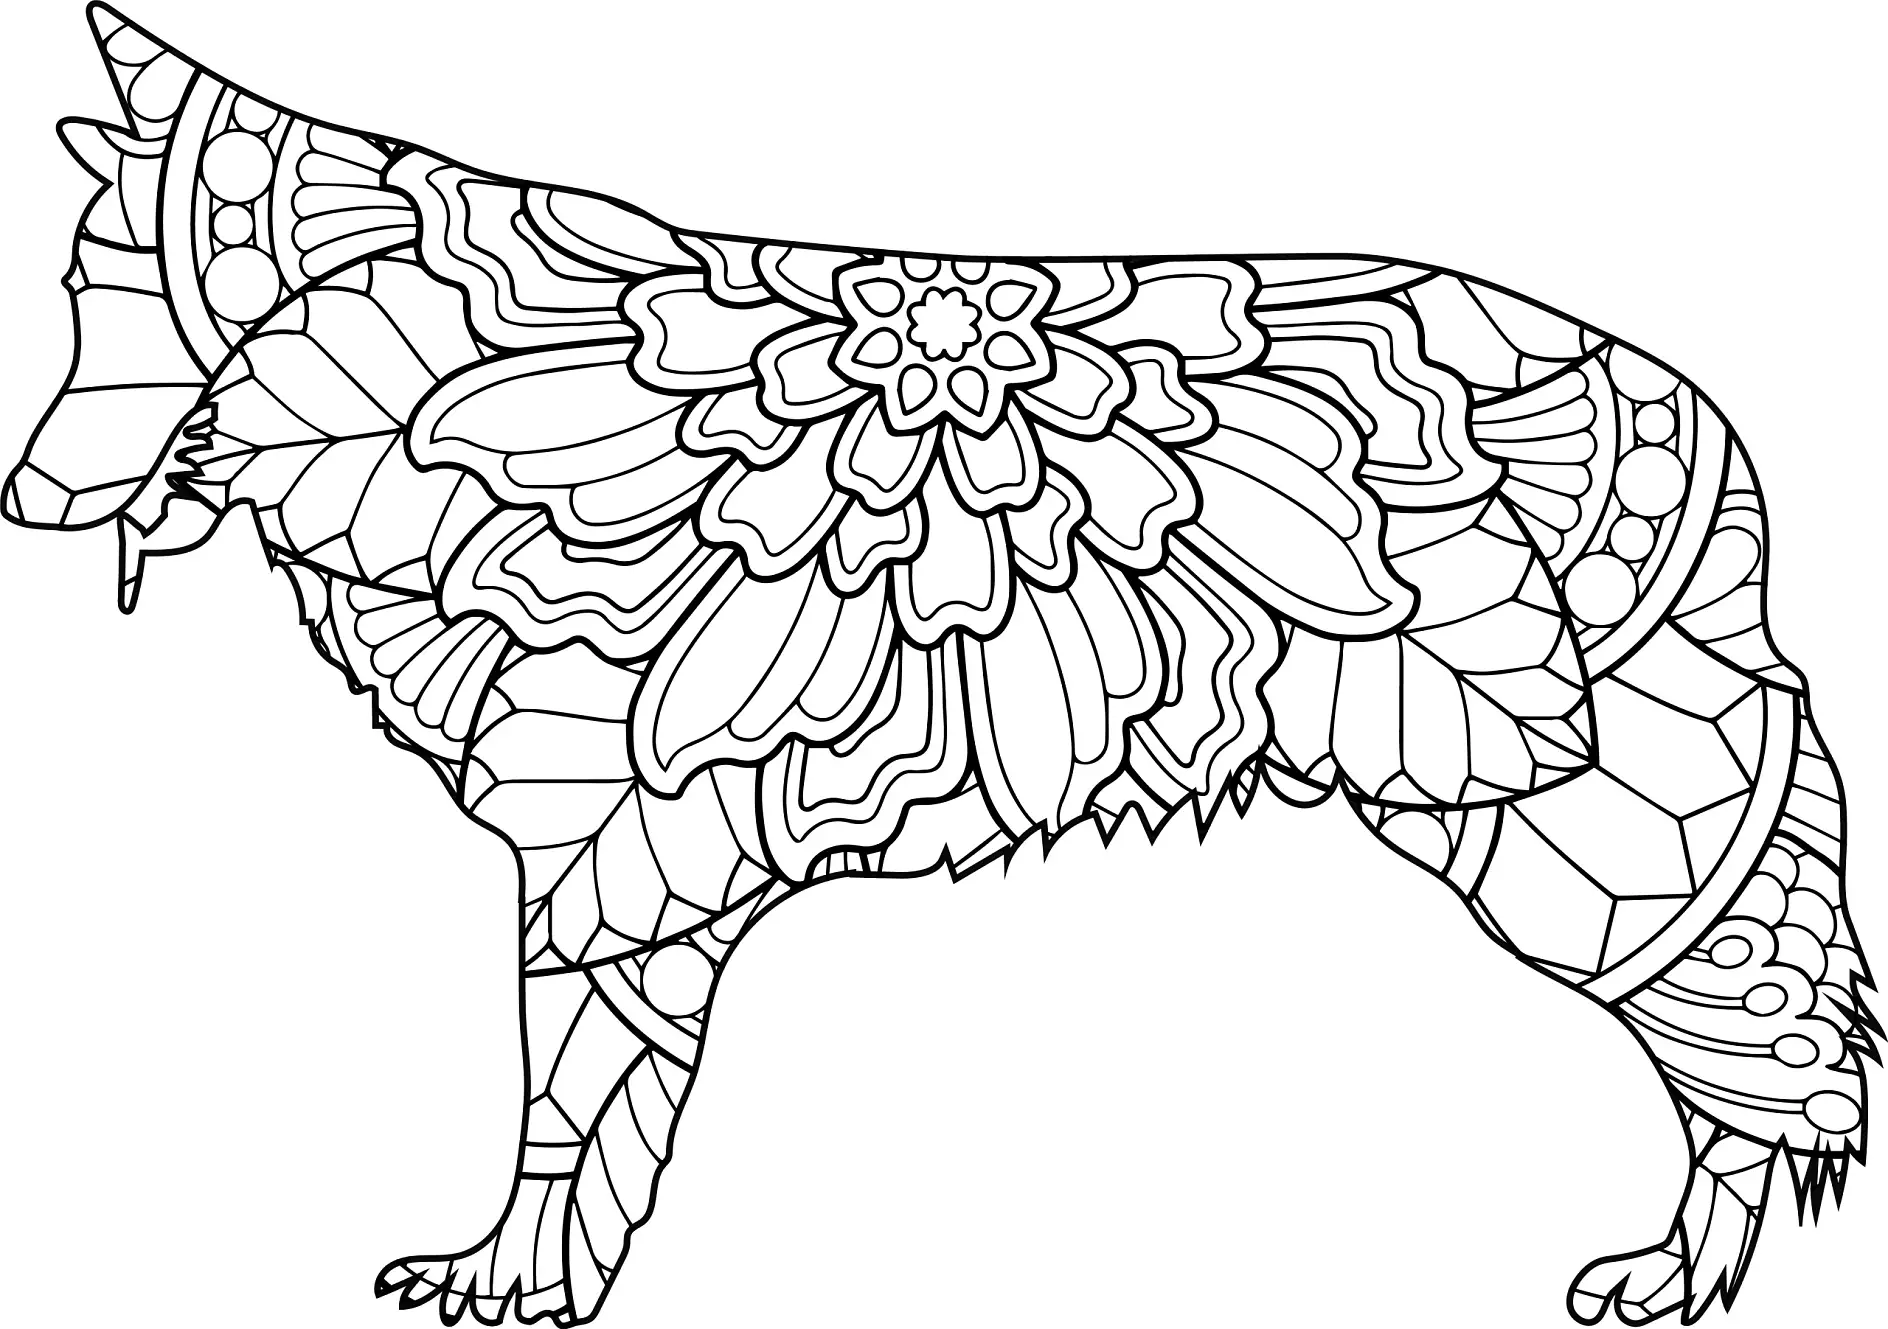 Ausmalbild Mandala mit stehendem Hund und floralen Mustern